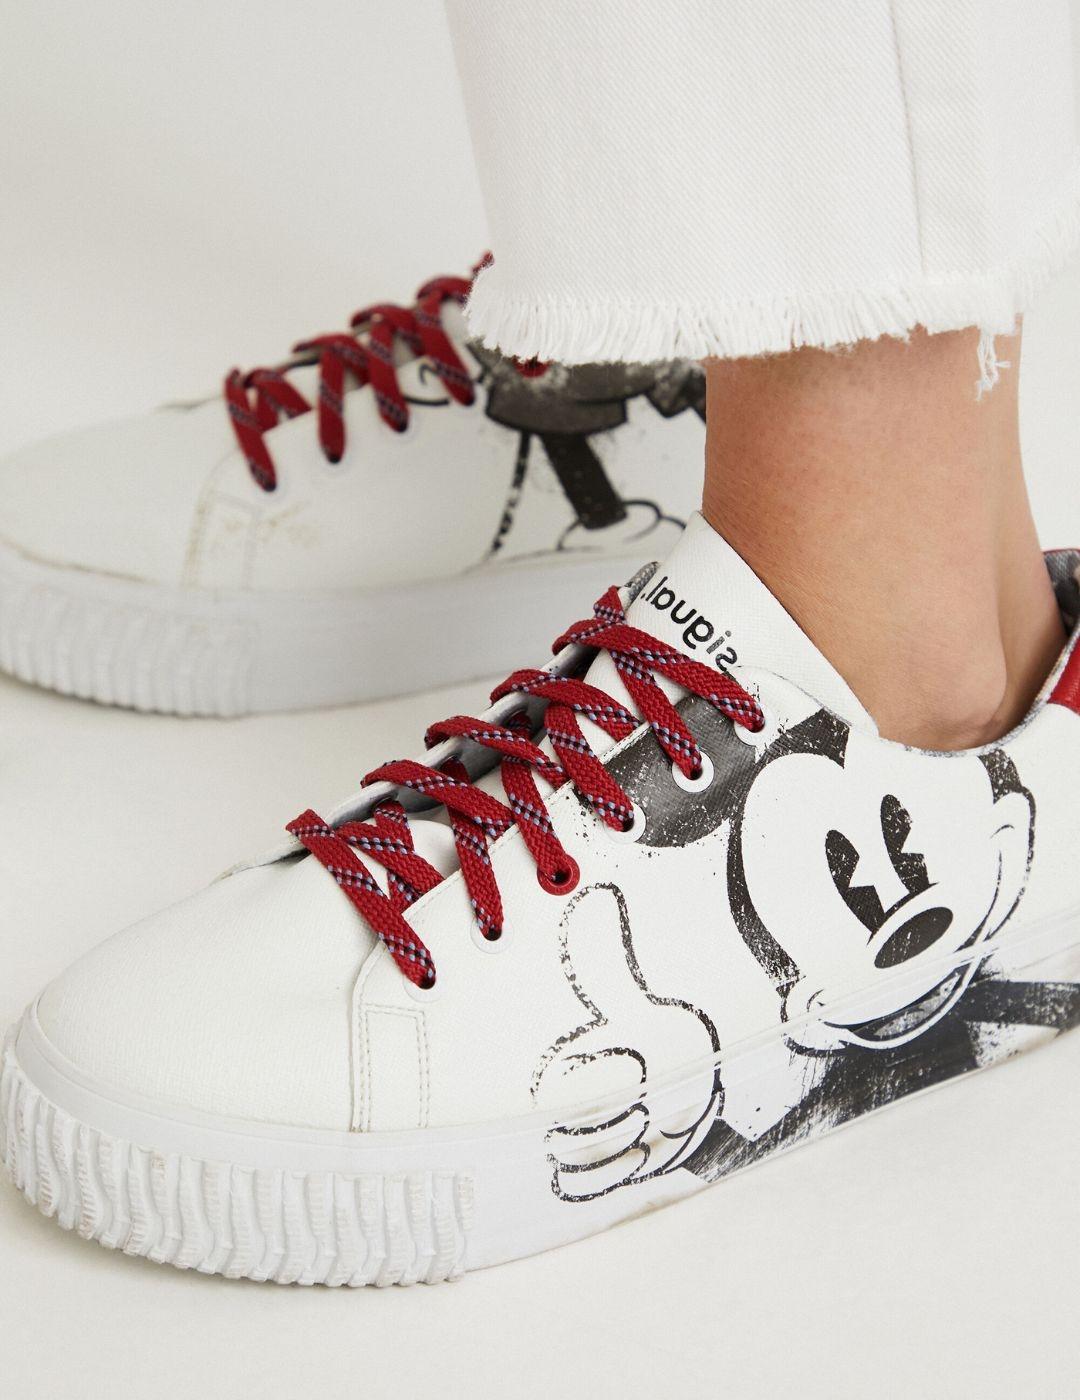 Zapatillas ilustración Mickey Mouse